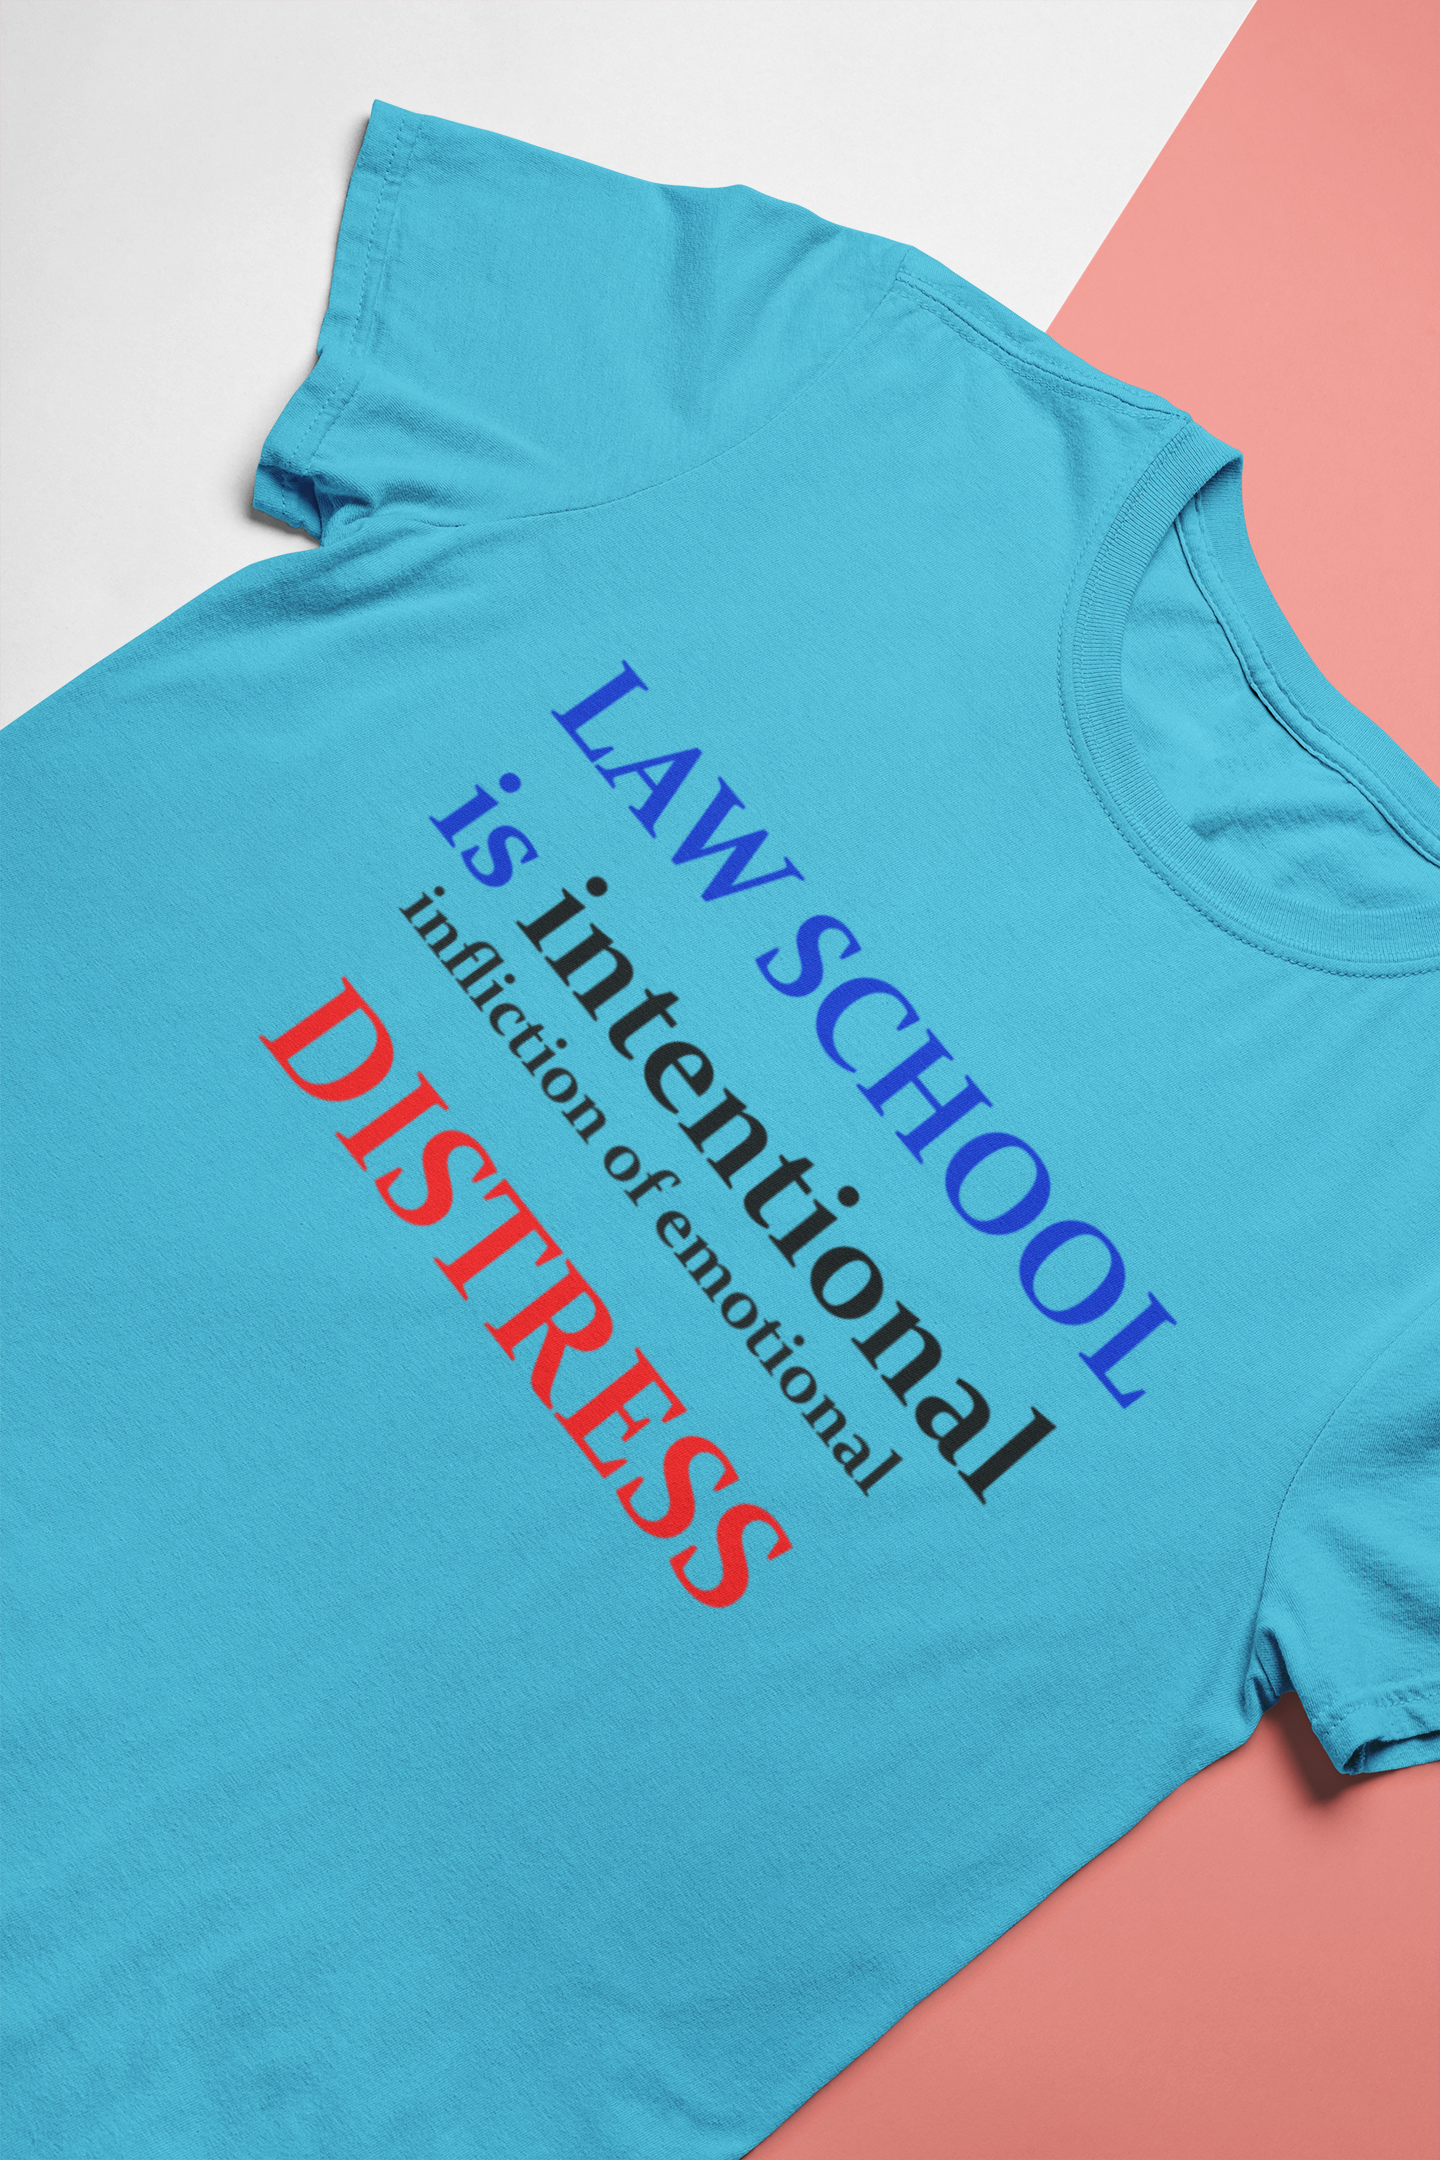 Law School Is International Distress Lawyer Women Half Sleeves T-shirt- FunkyTeesClub